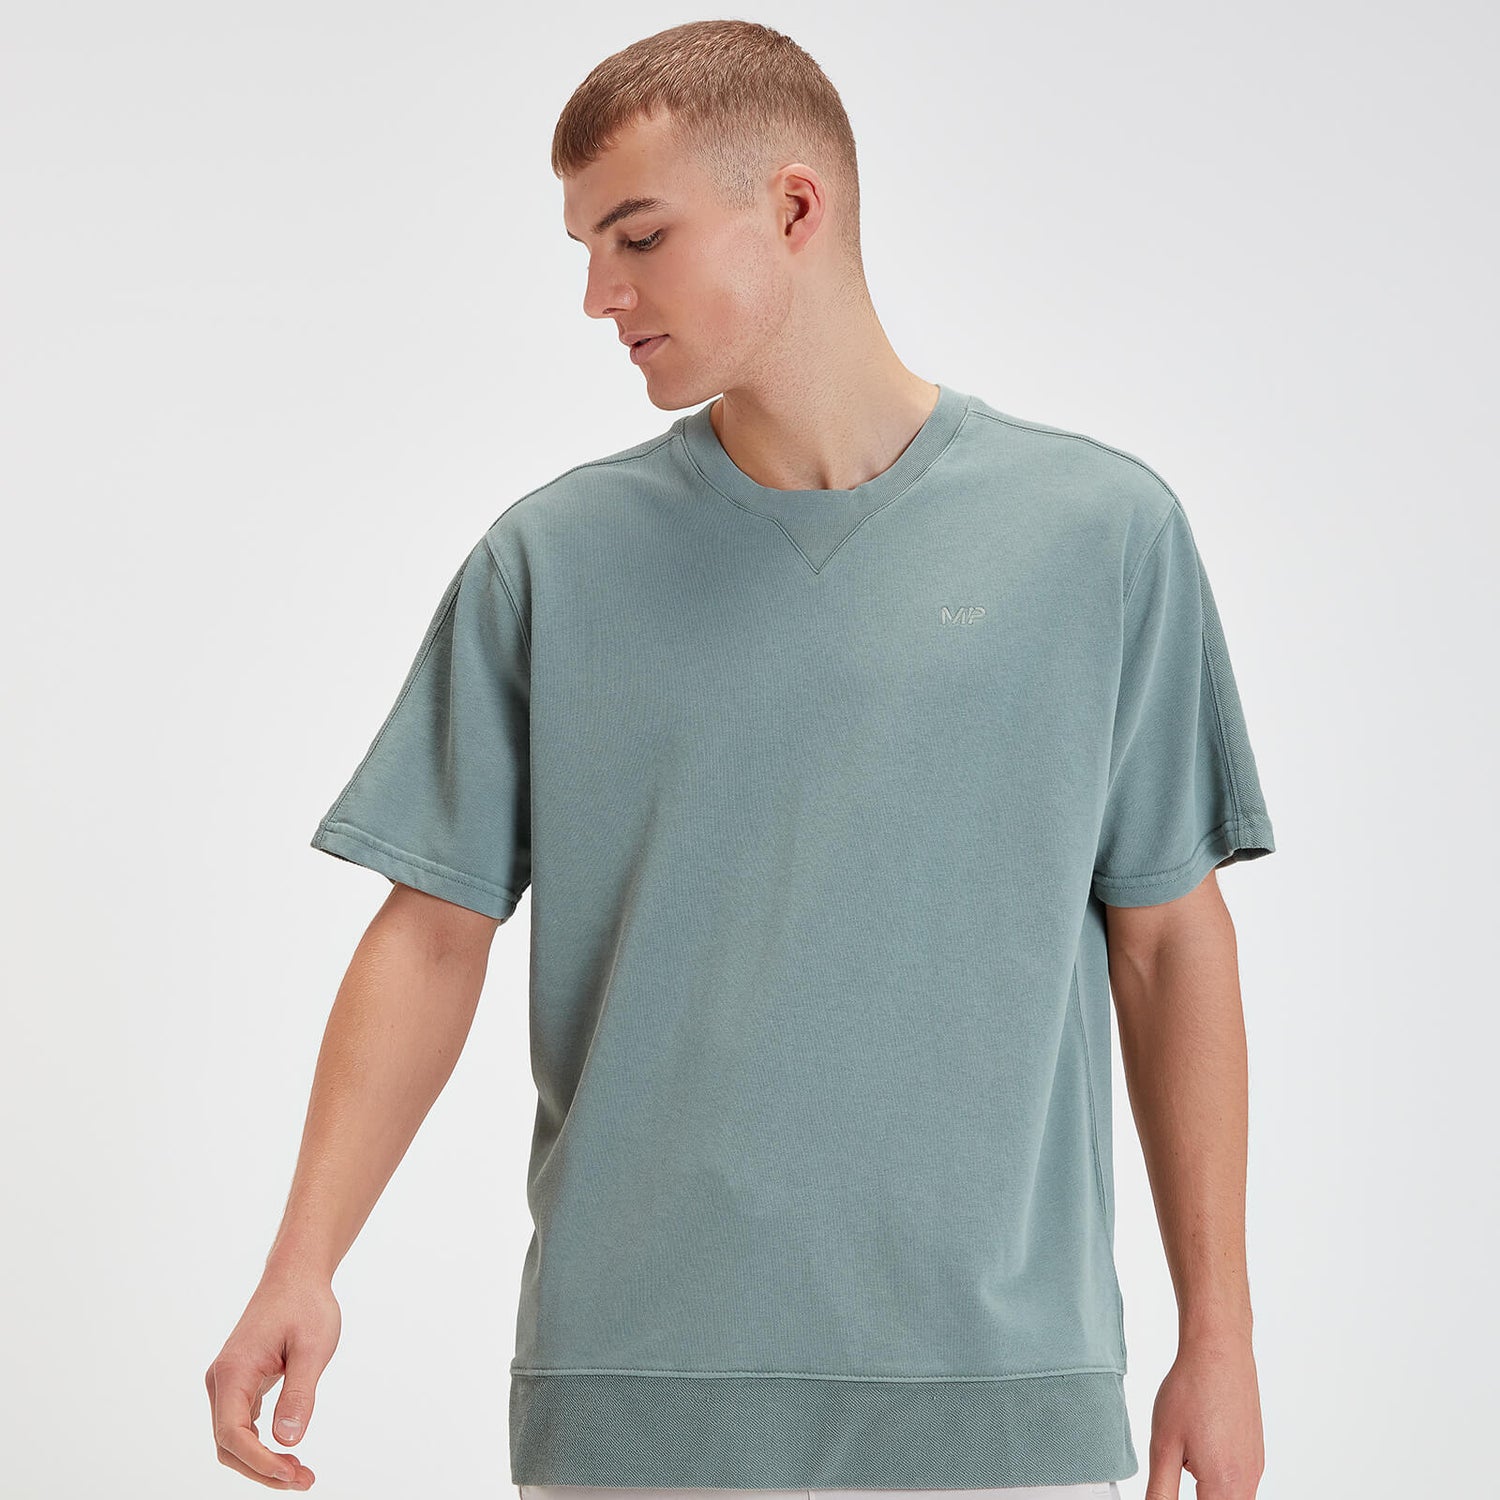 MP Men's Rest Day Short Sleeve T-shirt – Blå/grön - XS